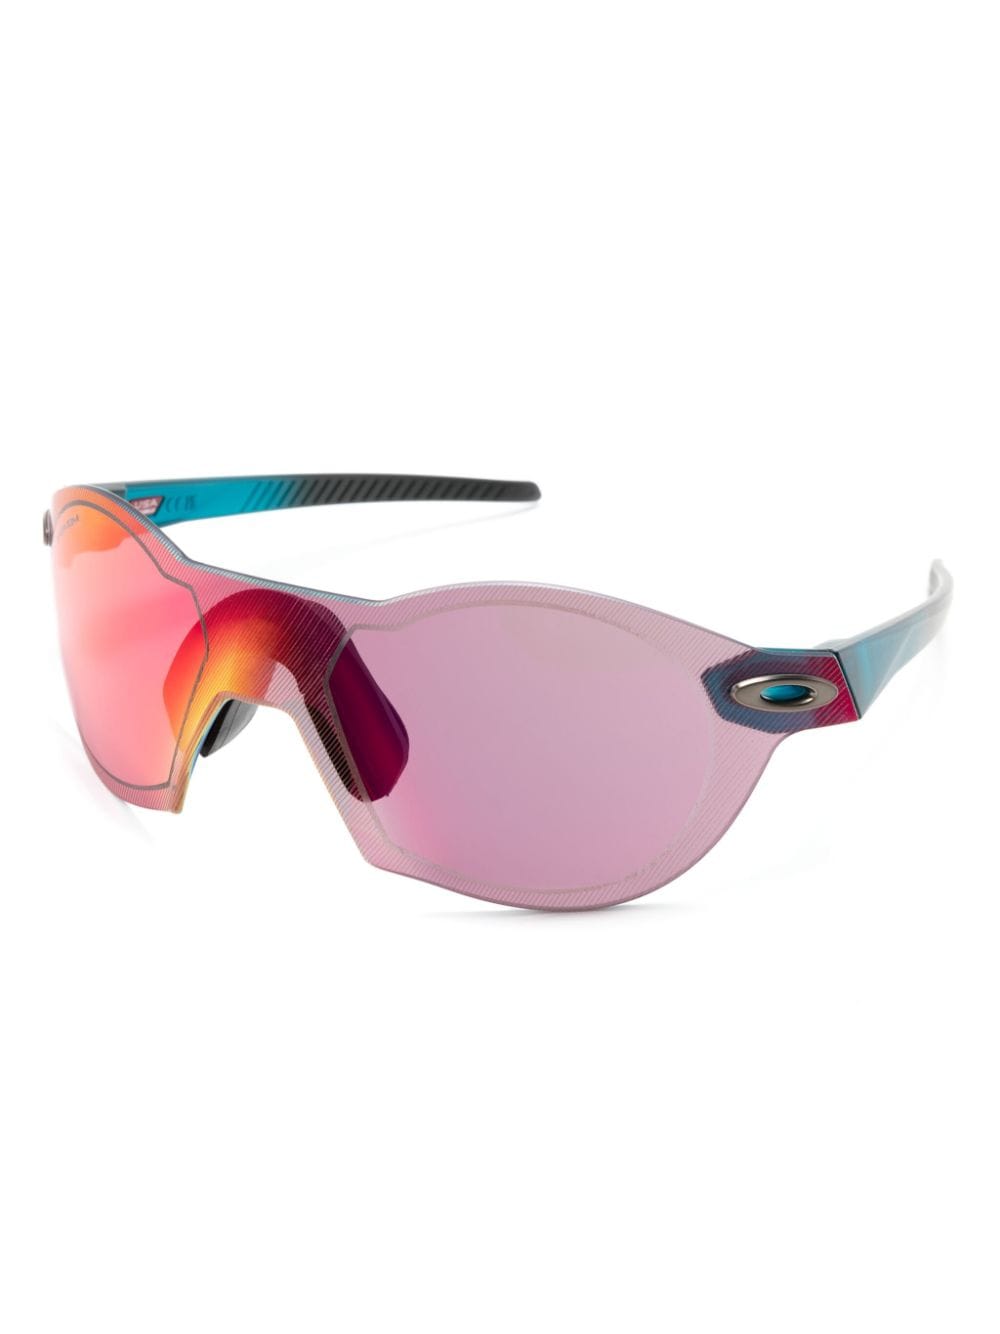 SubZero round-frame mirrored sunglasses<BR/><BR/><BR/>